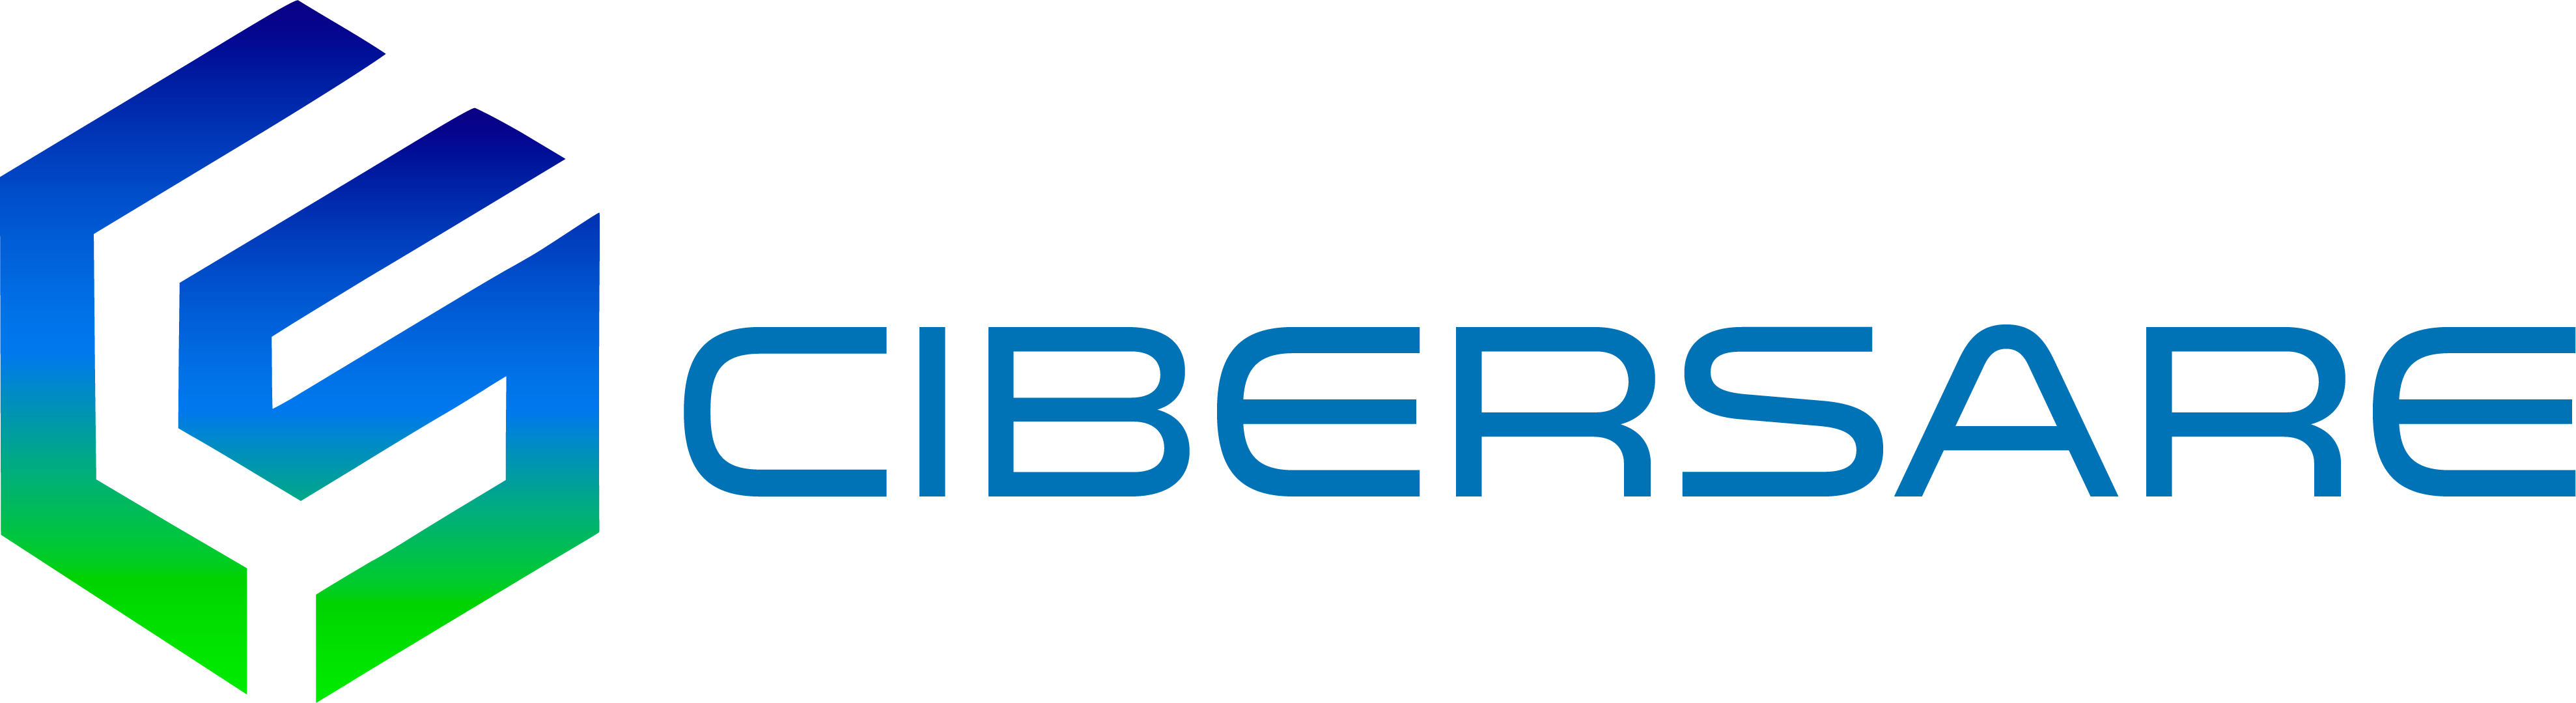 Logo Cibersare